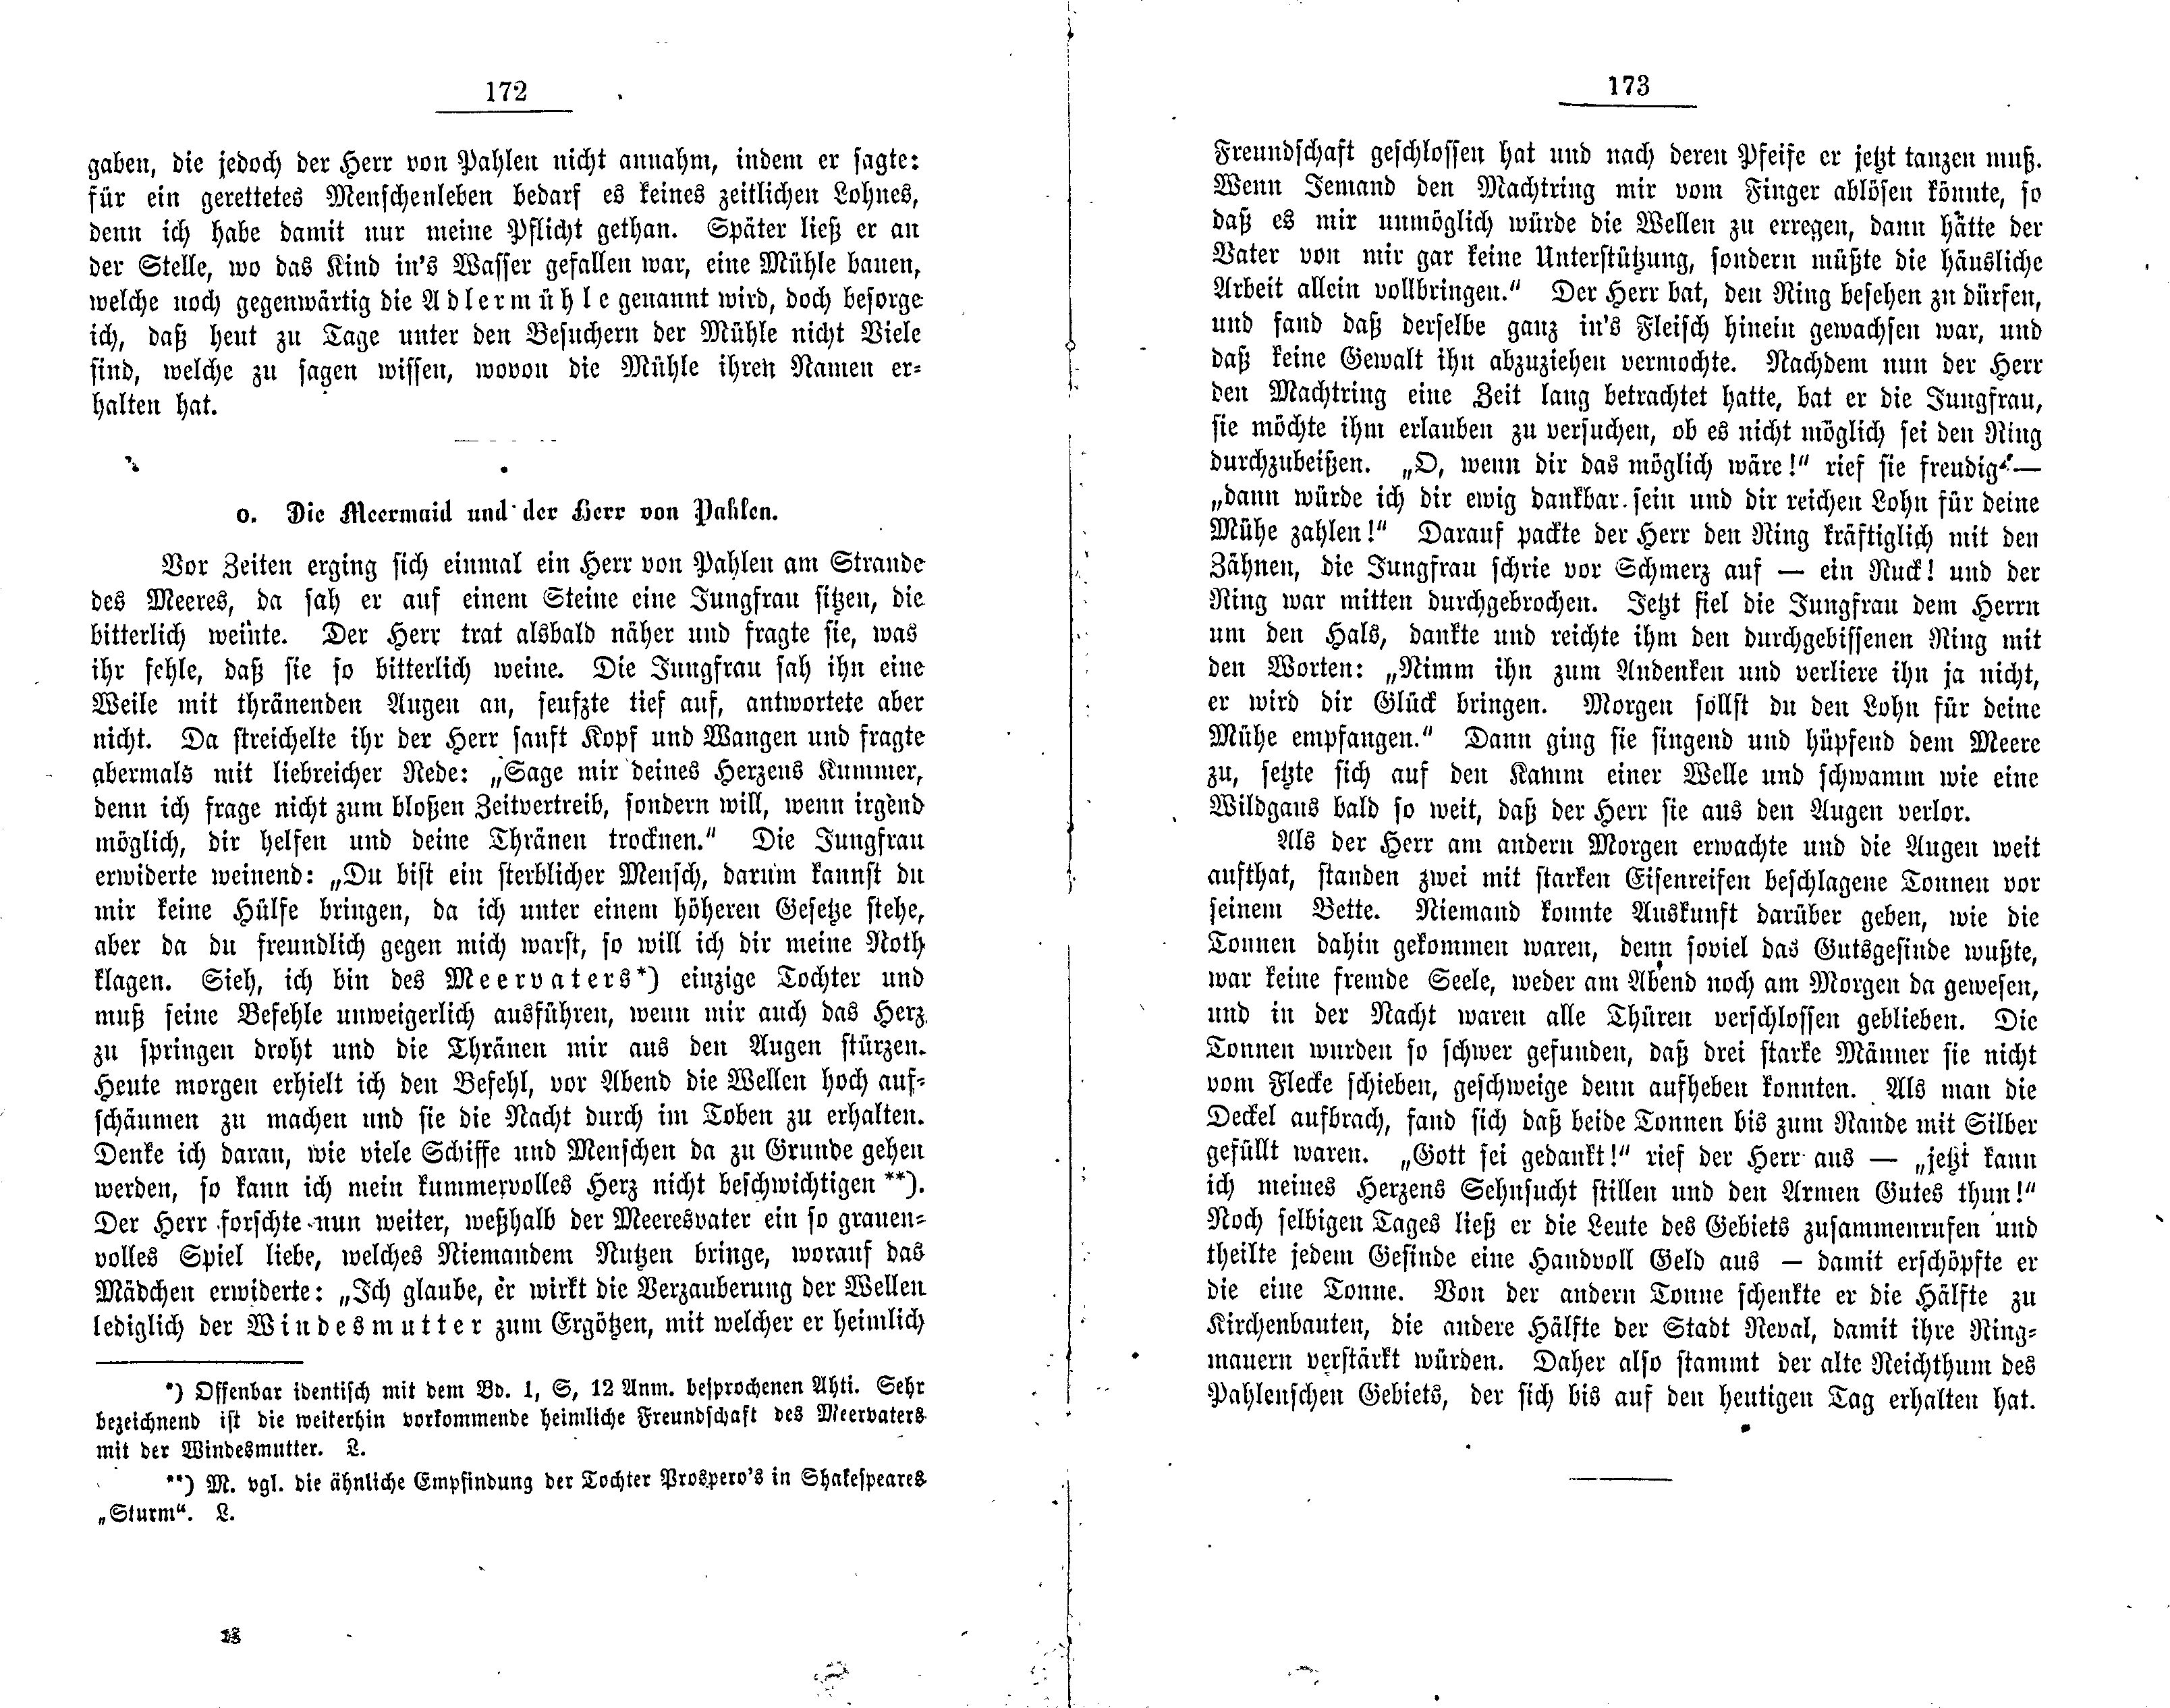 Der aus den klauen eines Adlers gerettete Königssohn (1881) | 2. (172-173) Main body of text